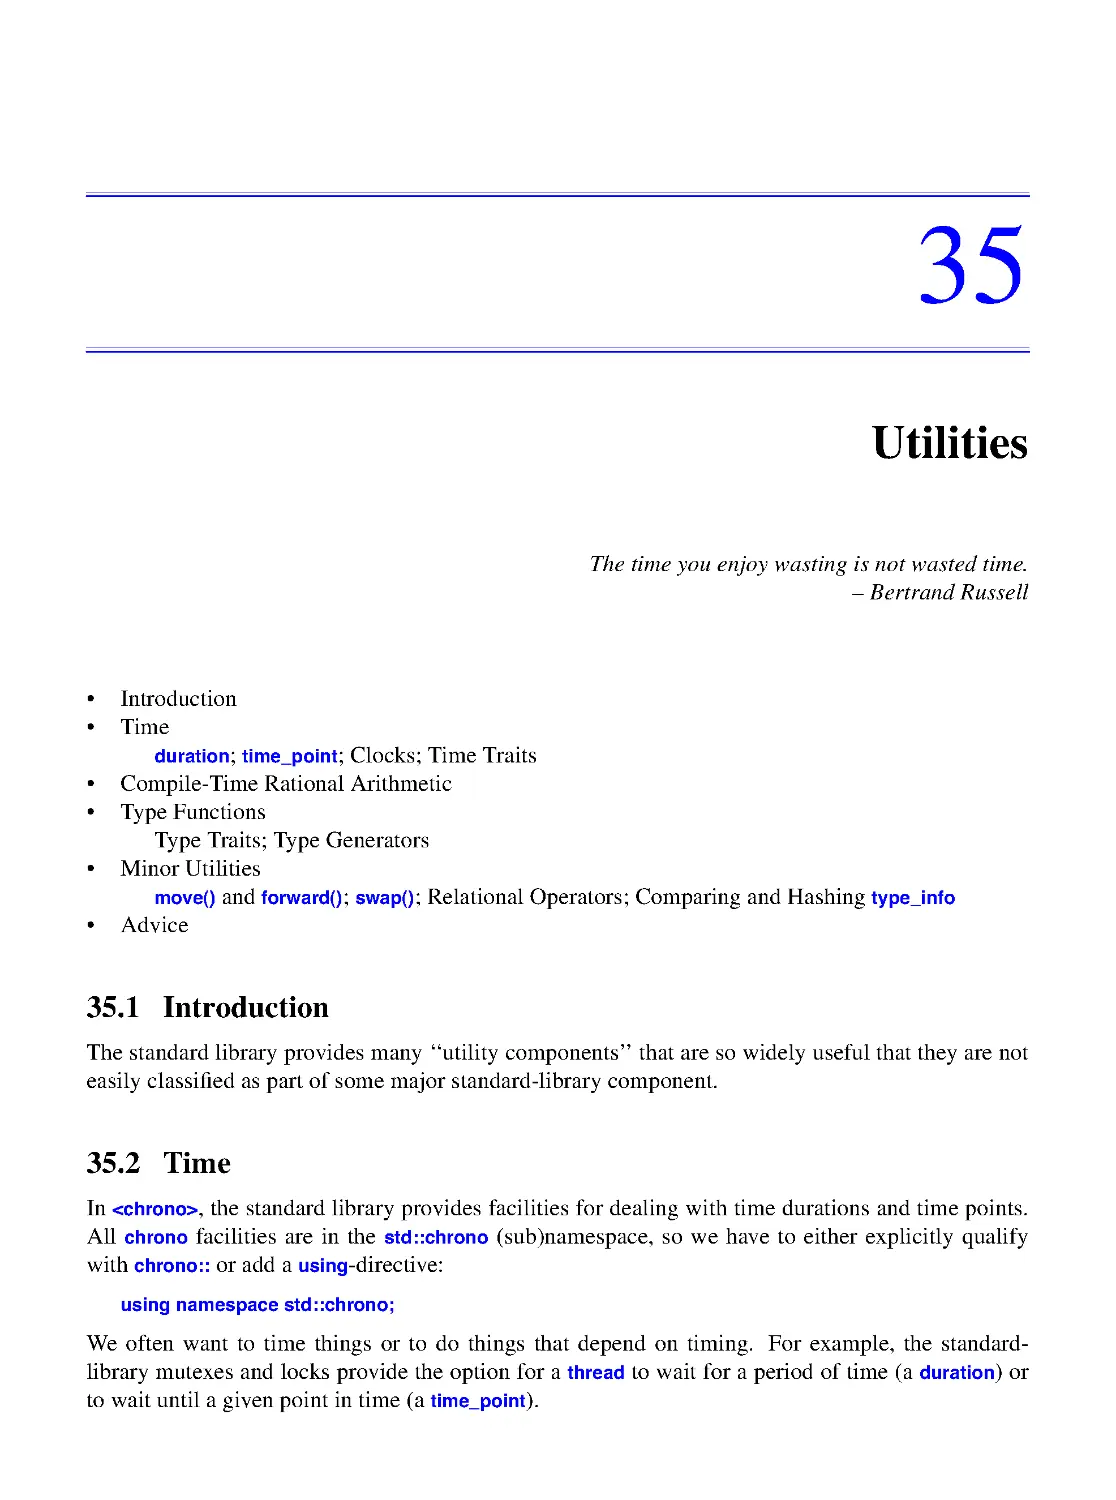 35. Utilities